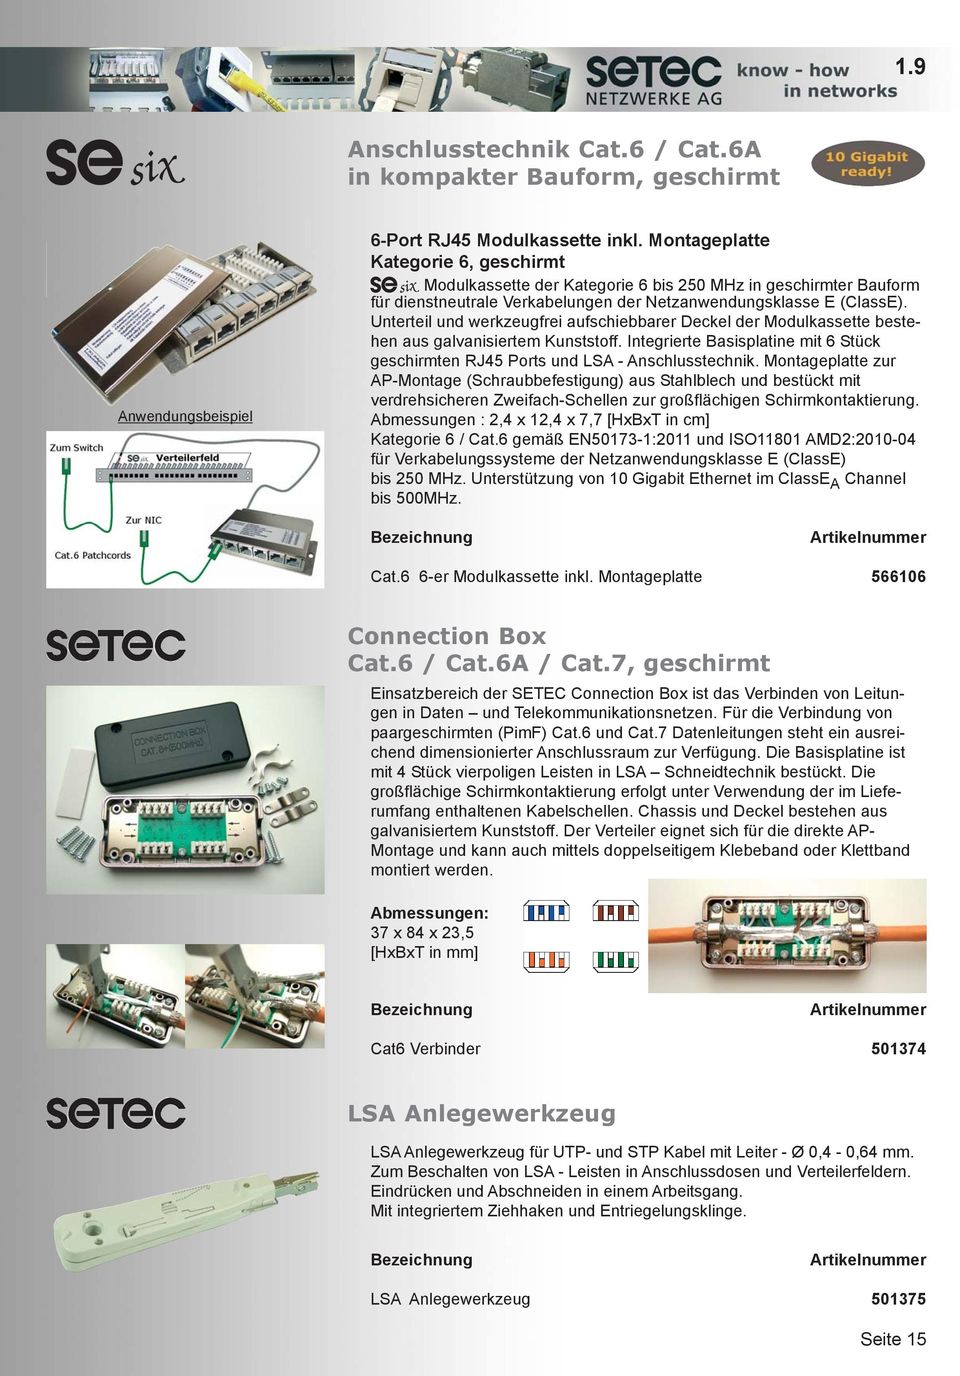 Unterteil und werkzeugfrei aufschiebbarer Deckel der Modulkassette bestehen aus galvanisiertem Kunststoff. Integrierte Basisplatine mit 6 Stück geschirmten RJ45 Ports und LSA - Anschlusstechnik.